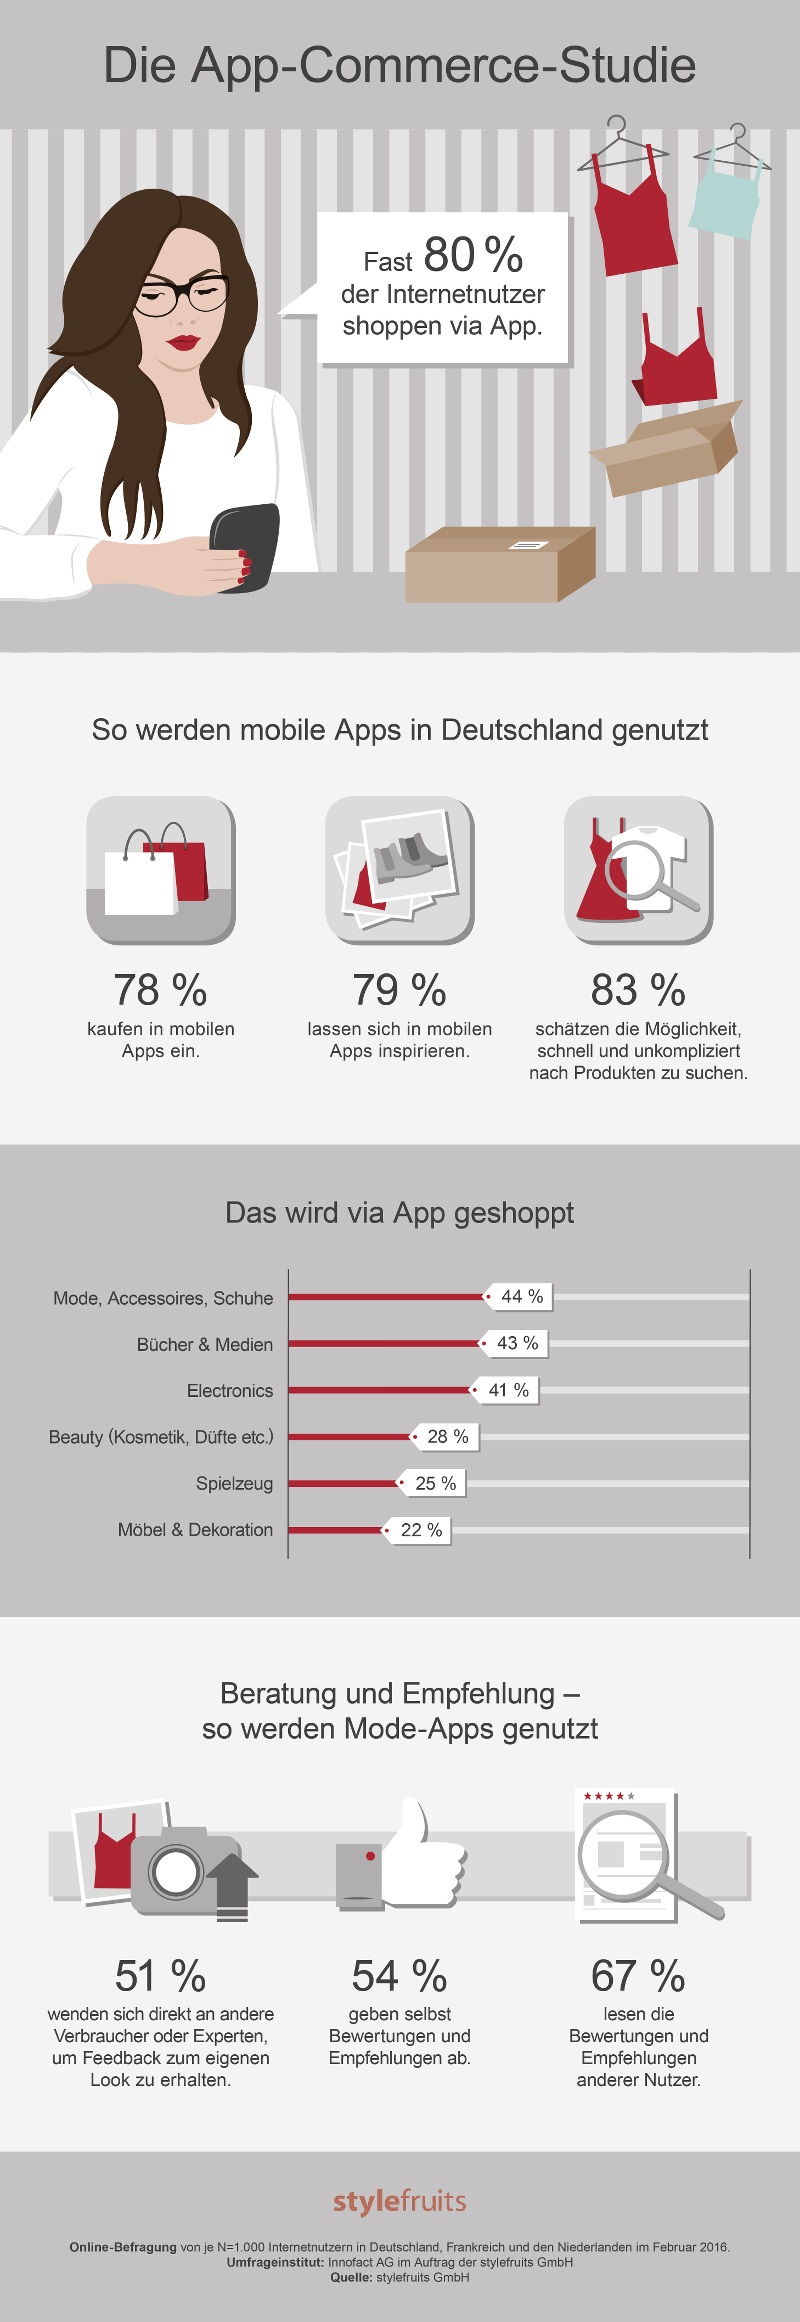 83 Prozent der Befragten schätzen, mittels App schnell und unkompliziert nach Produkten zu suchen, 21 Prozent tun dies sogar täglich. 79 Prozent lassen sich gerne übe die mobilen Anwendungen inspirieren. Wie oben erwähnt, kaufen 78 Prozent über Apps ein.